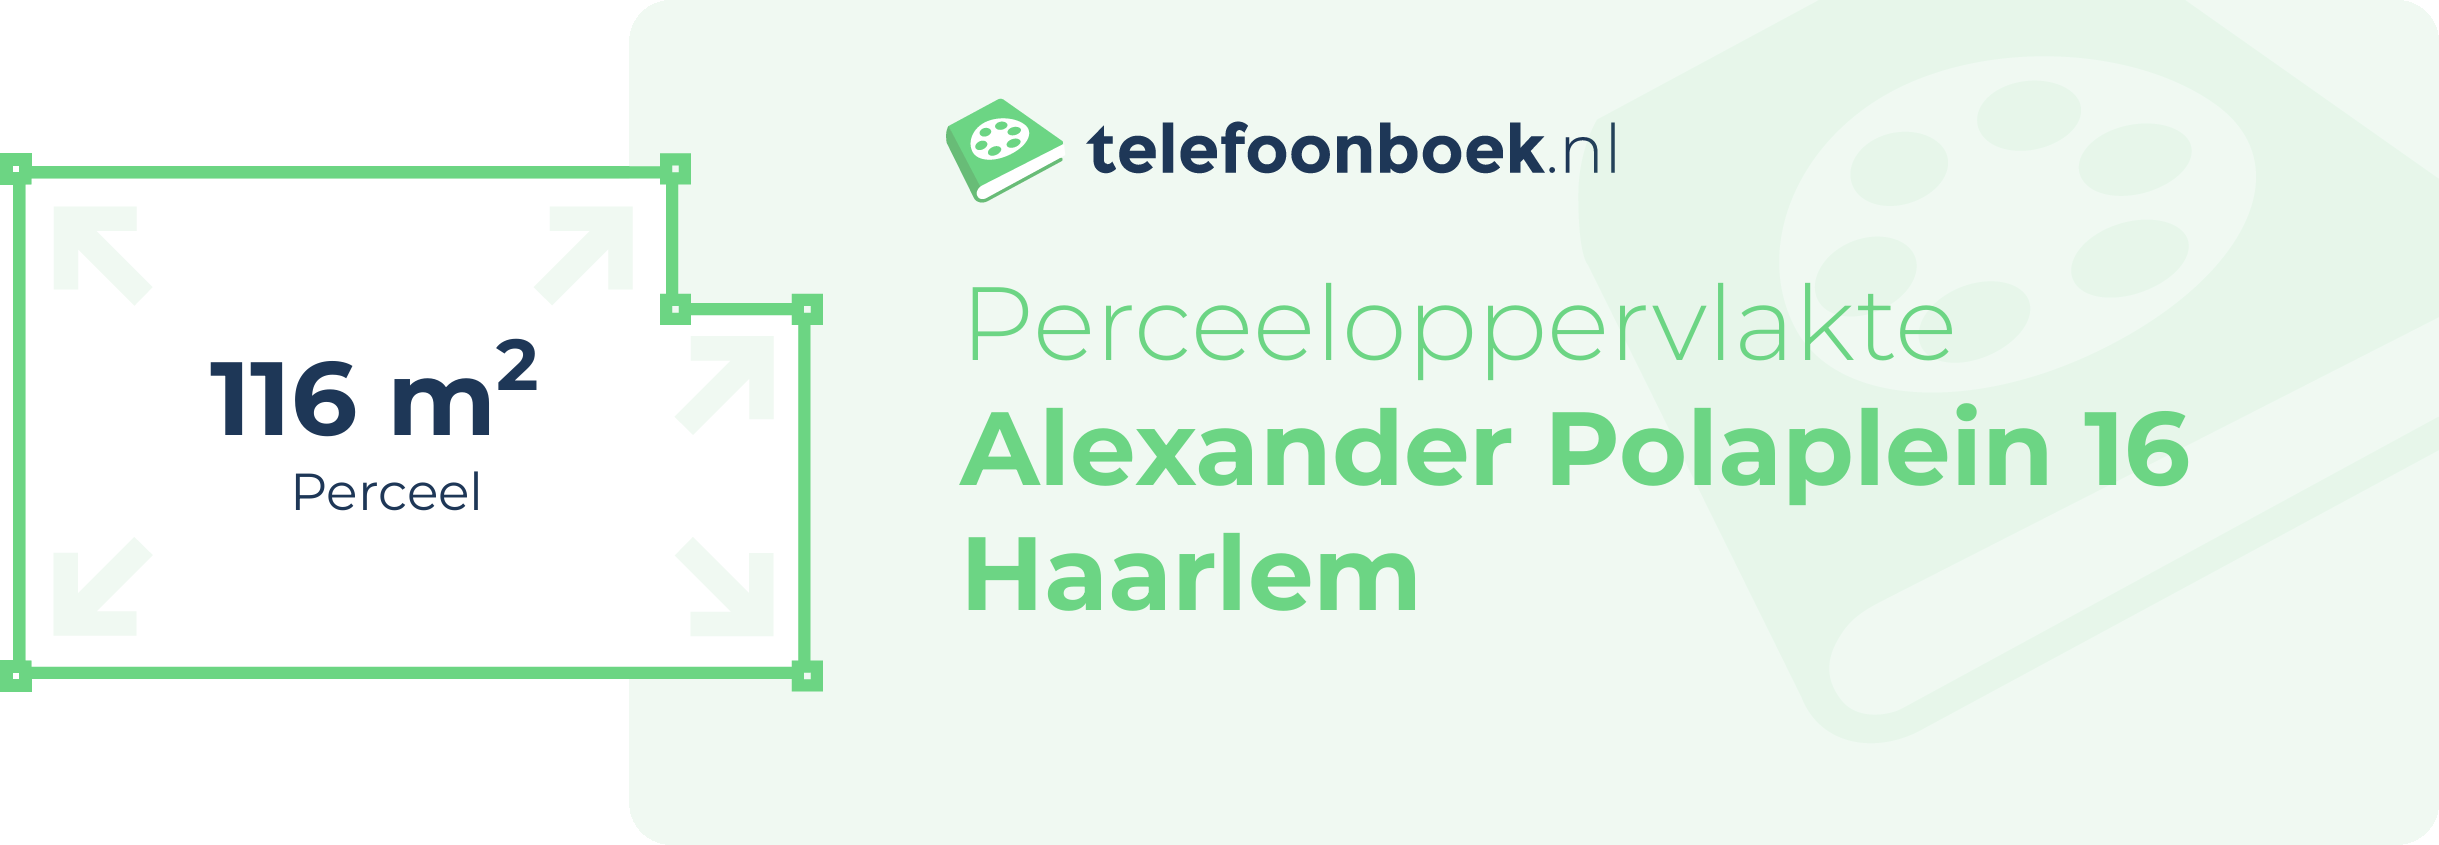 Perceeloppervlakte Alexander Polaplein 16 Haarlem